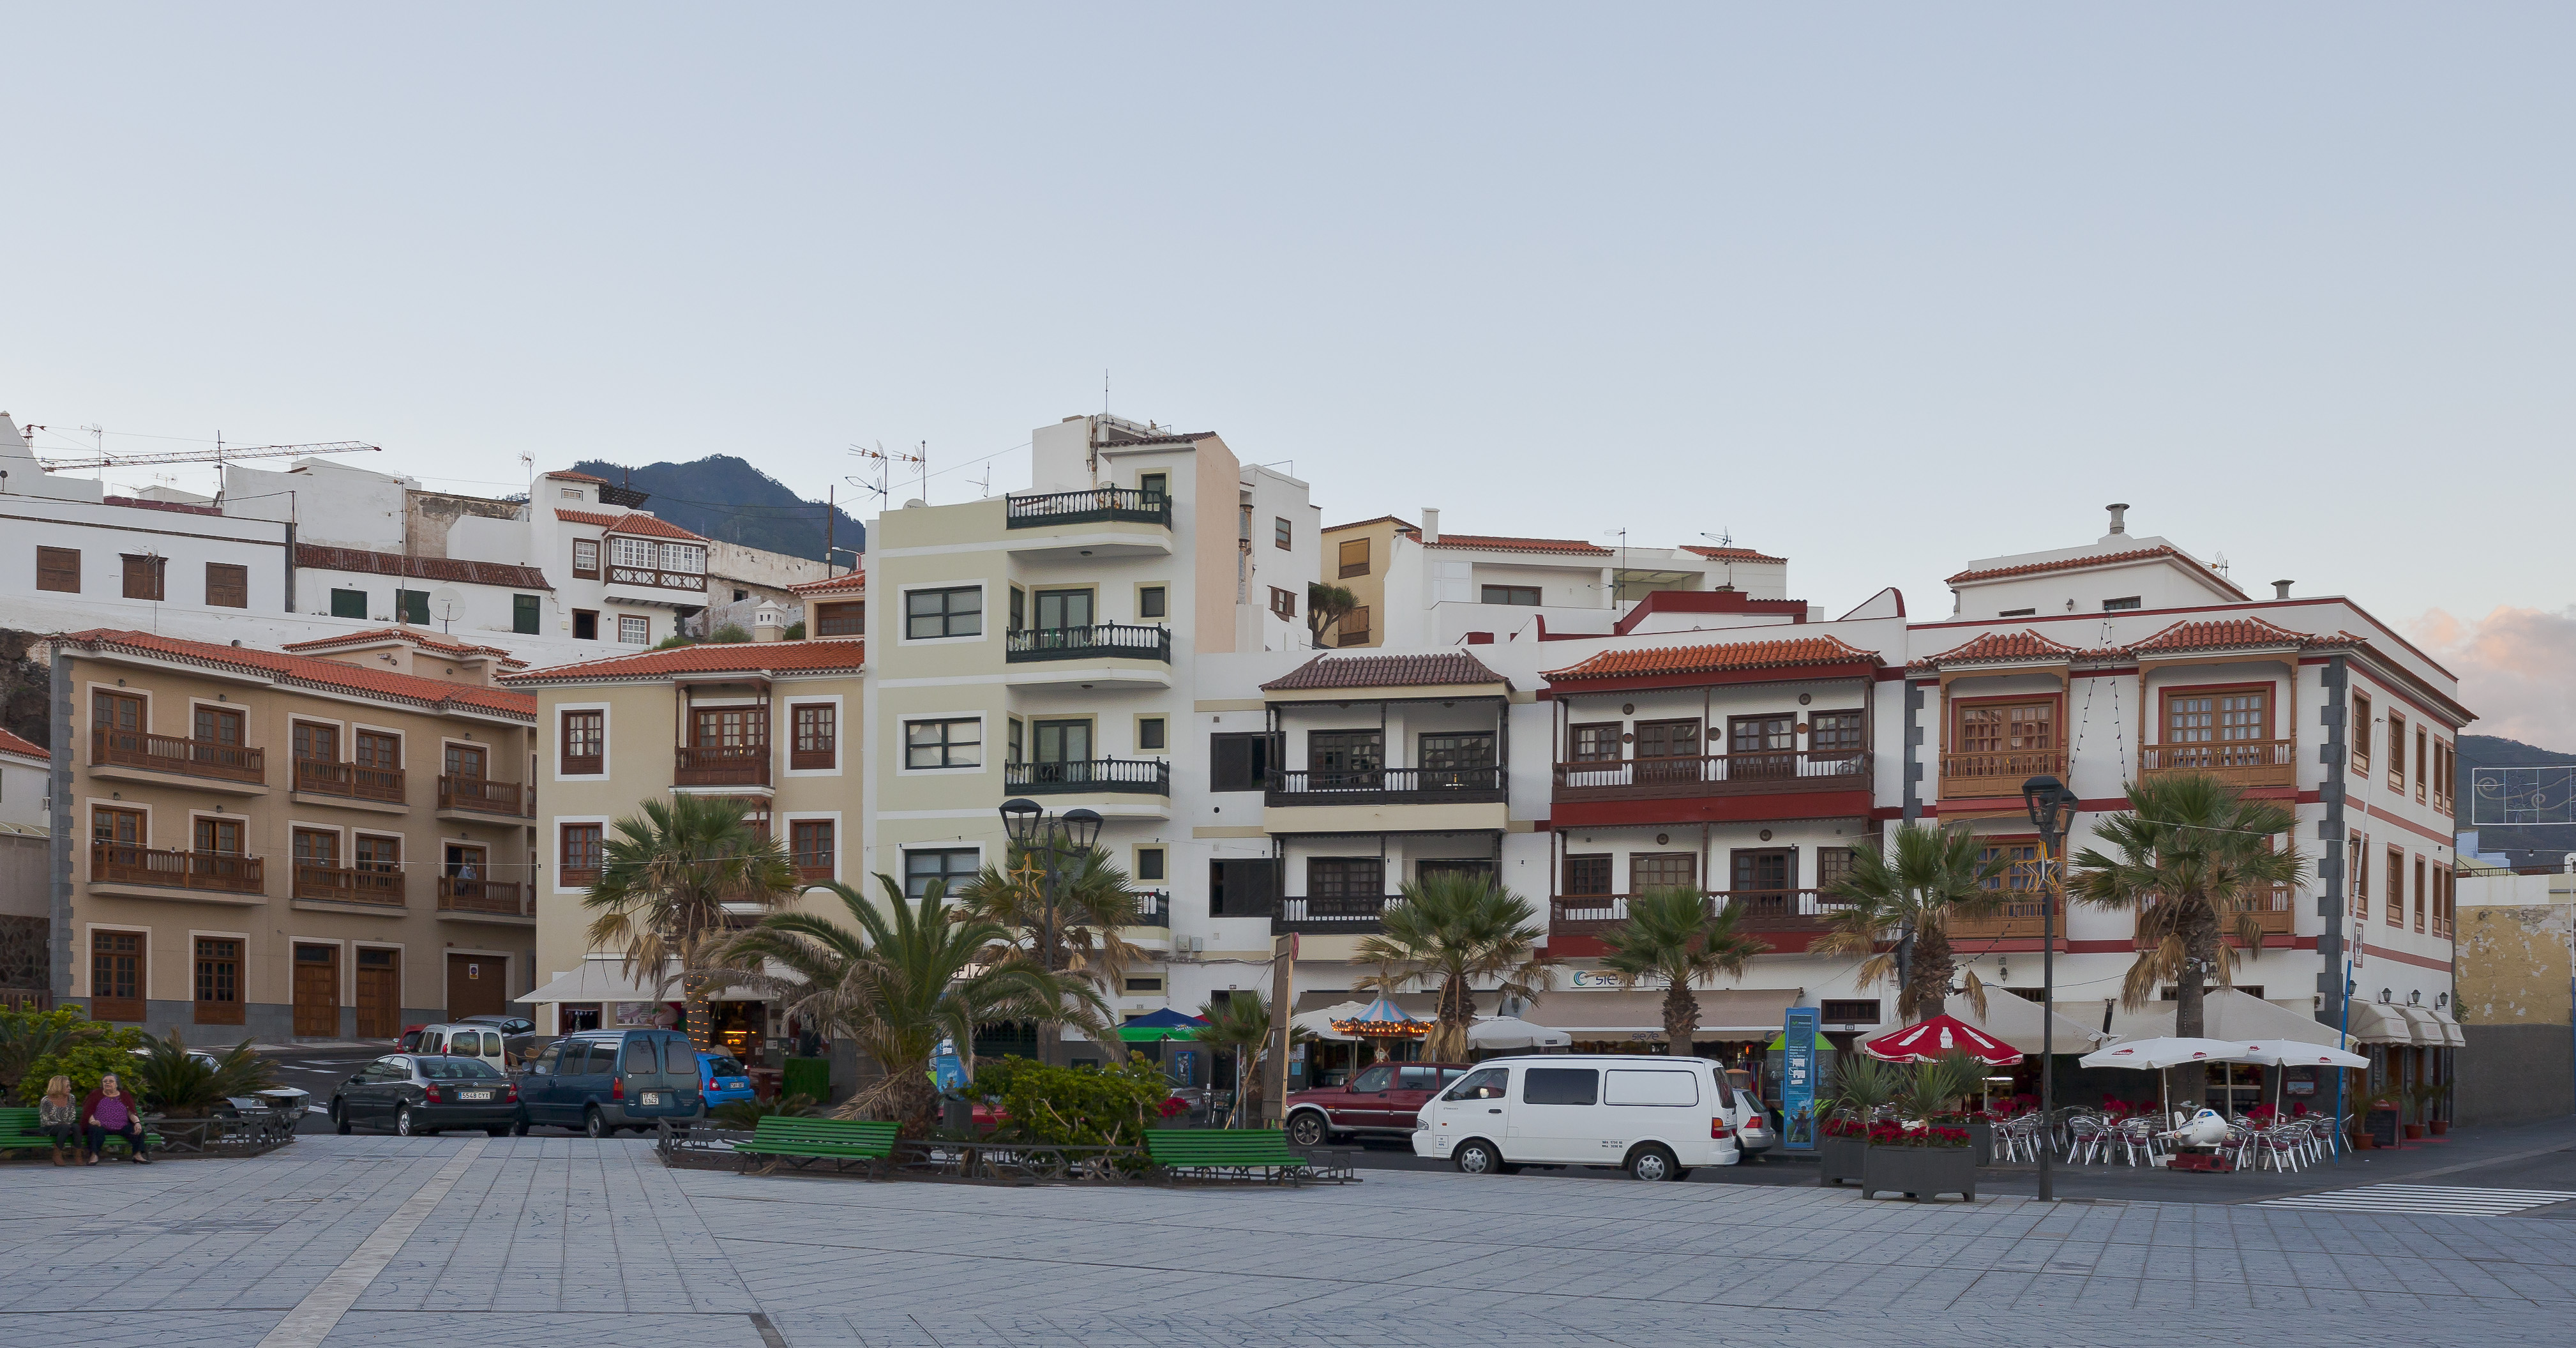 Vistas de Candelaria, Tenerife, España, 2012-12-12, DD 02